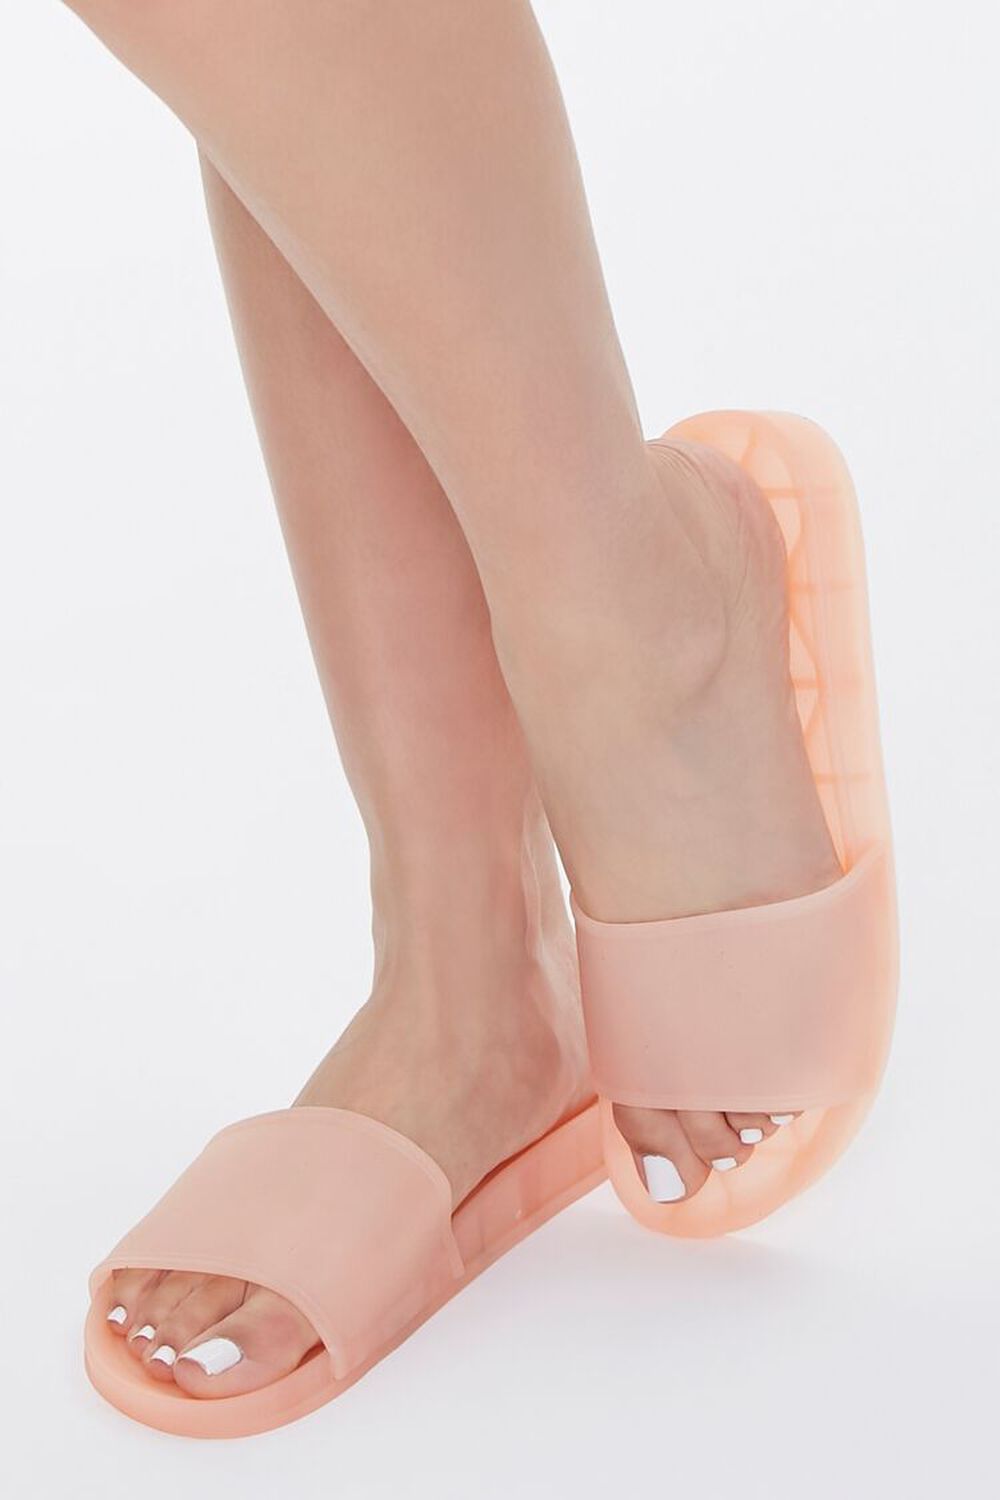 NUDE Slip-On Sandals, image 1